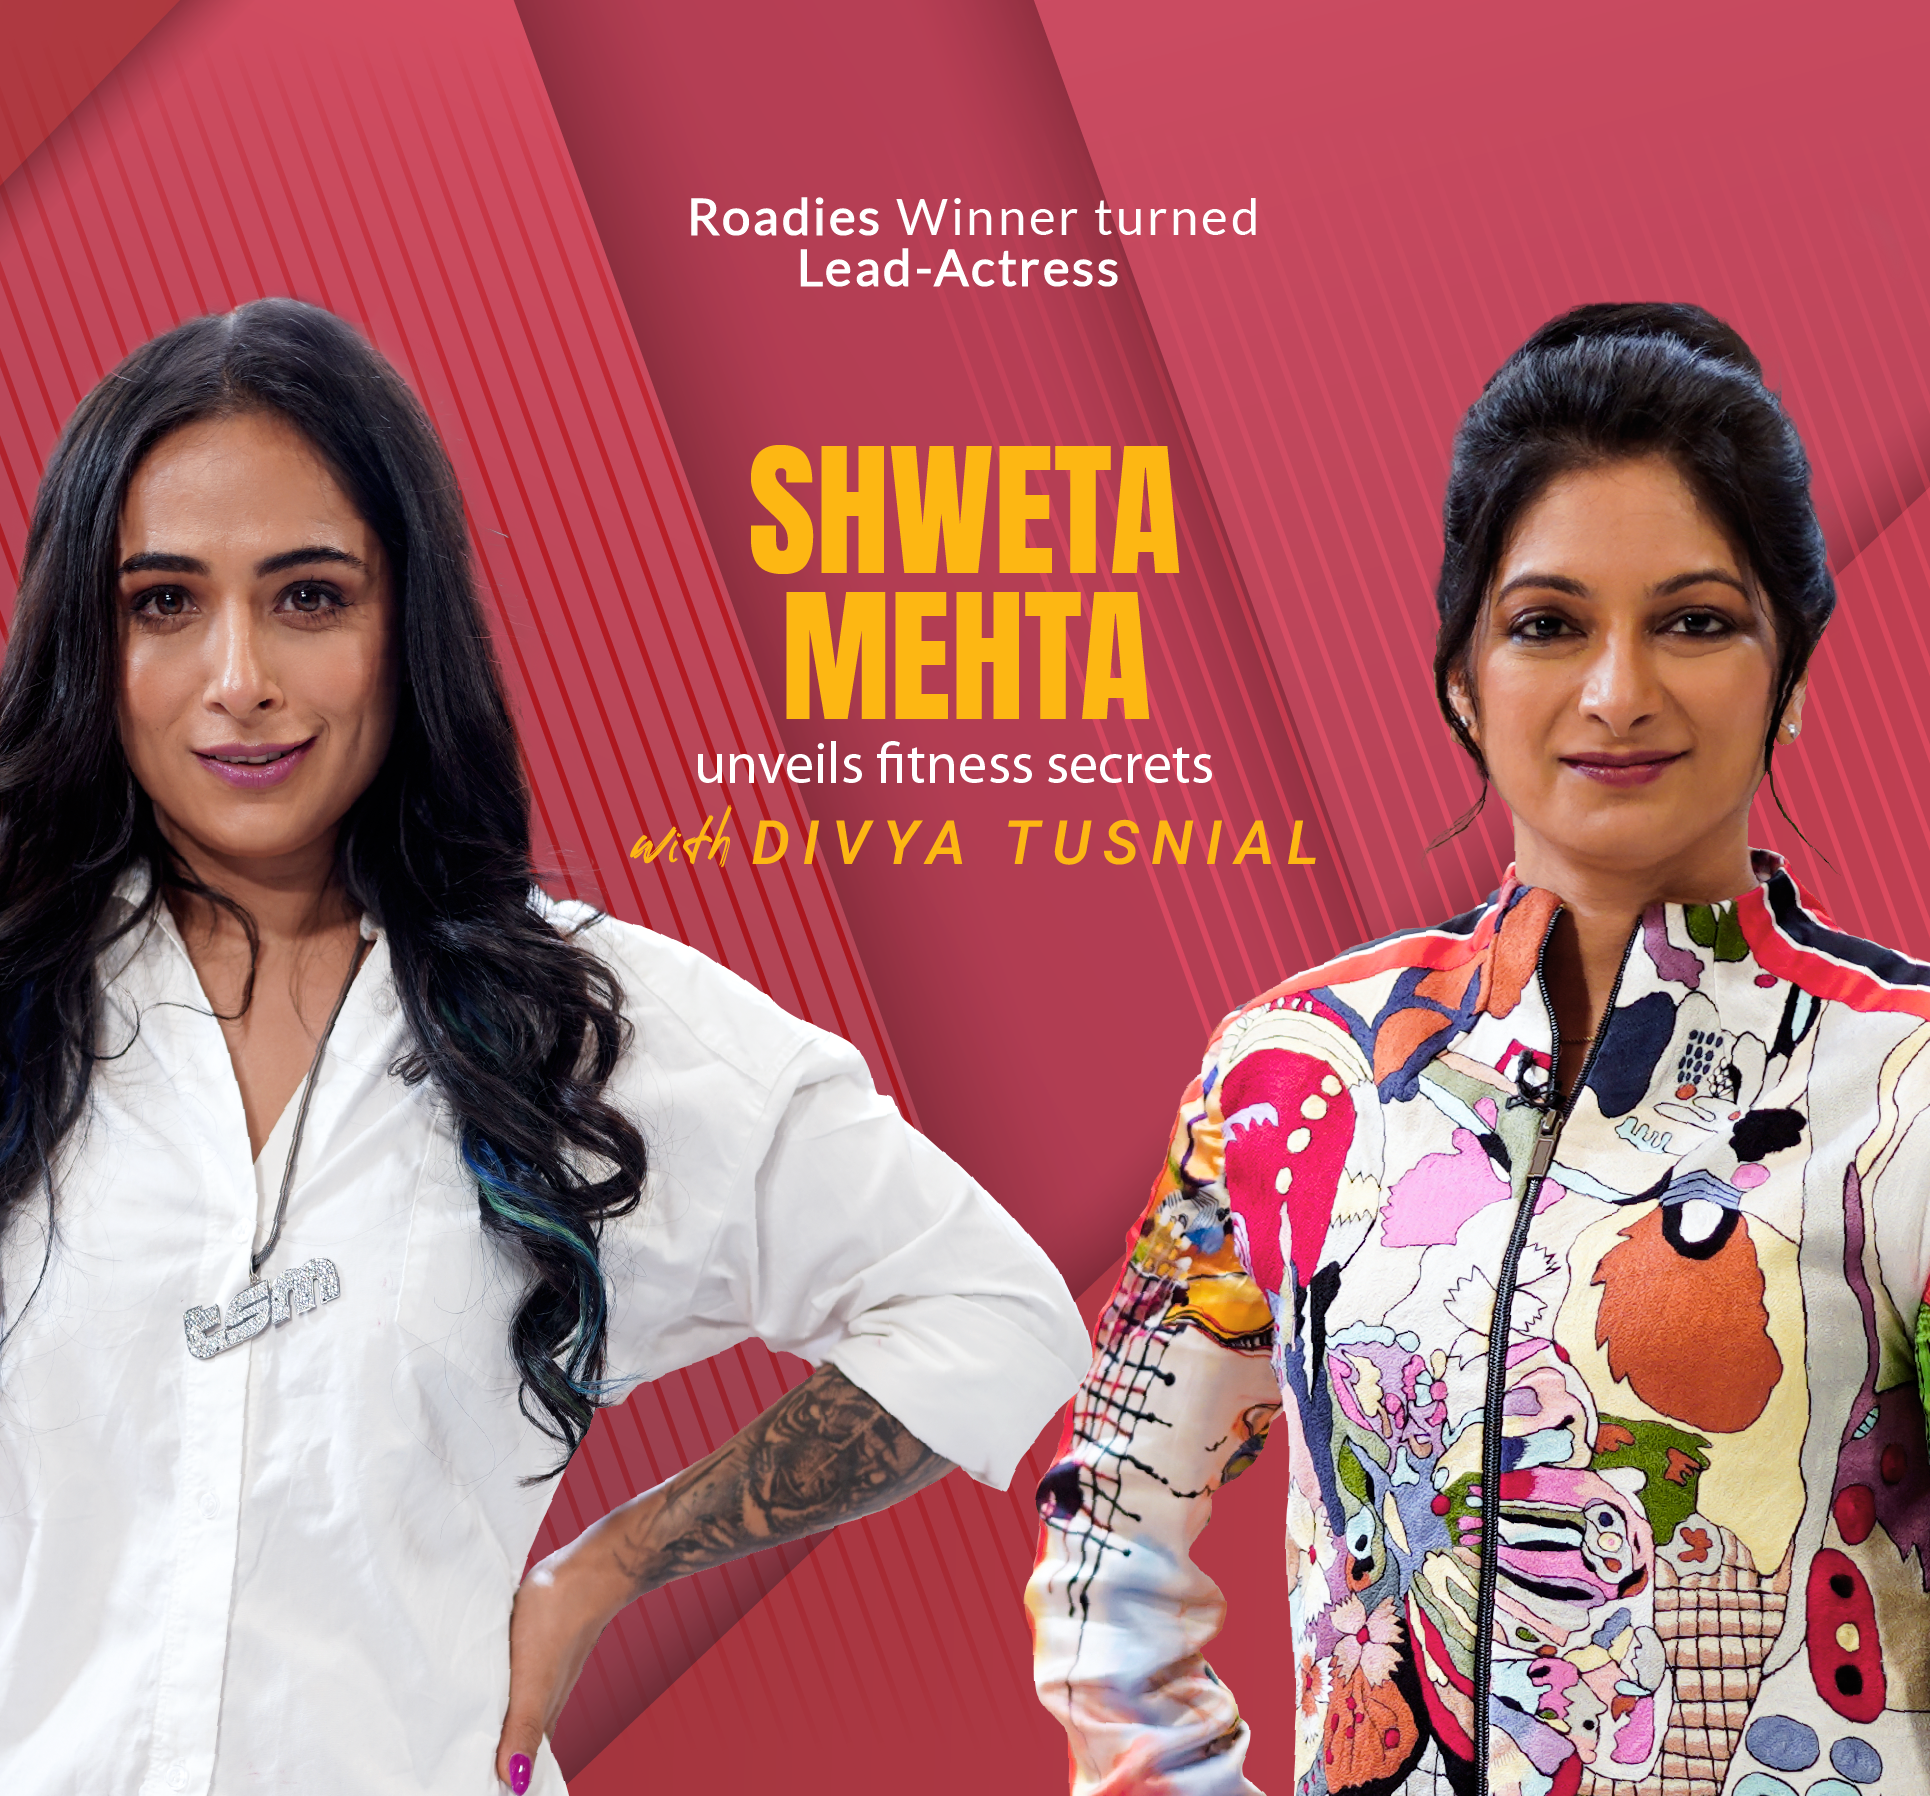 Divya Tusnial and Shweta Mehta